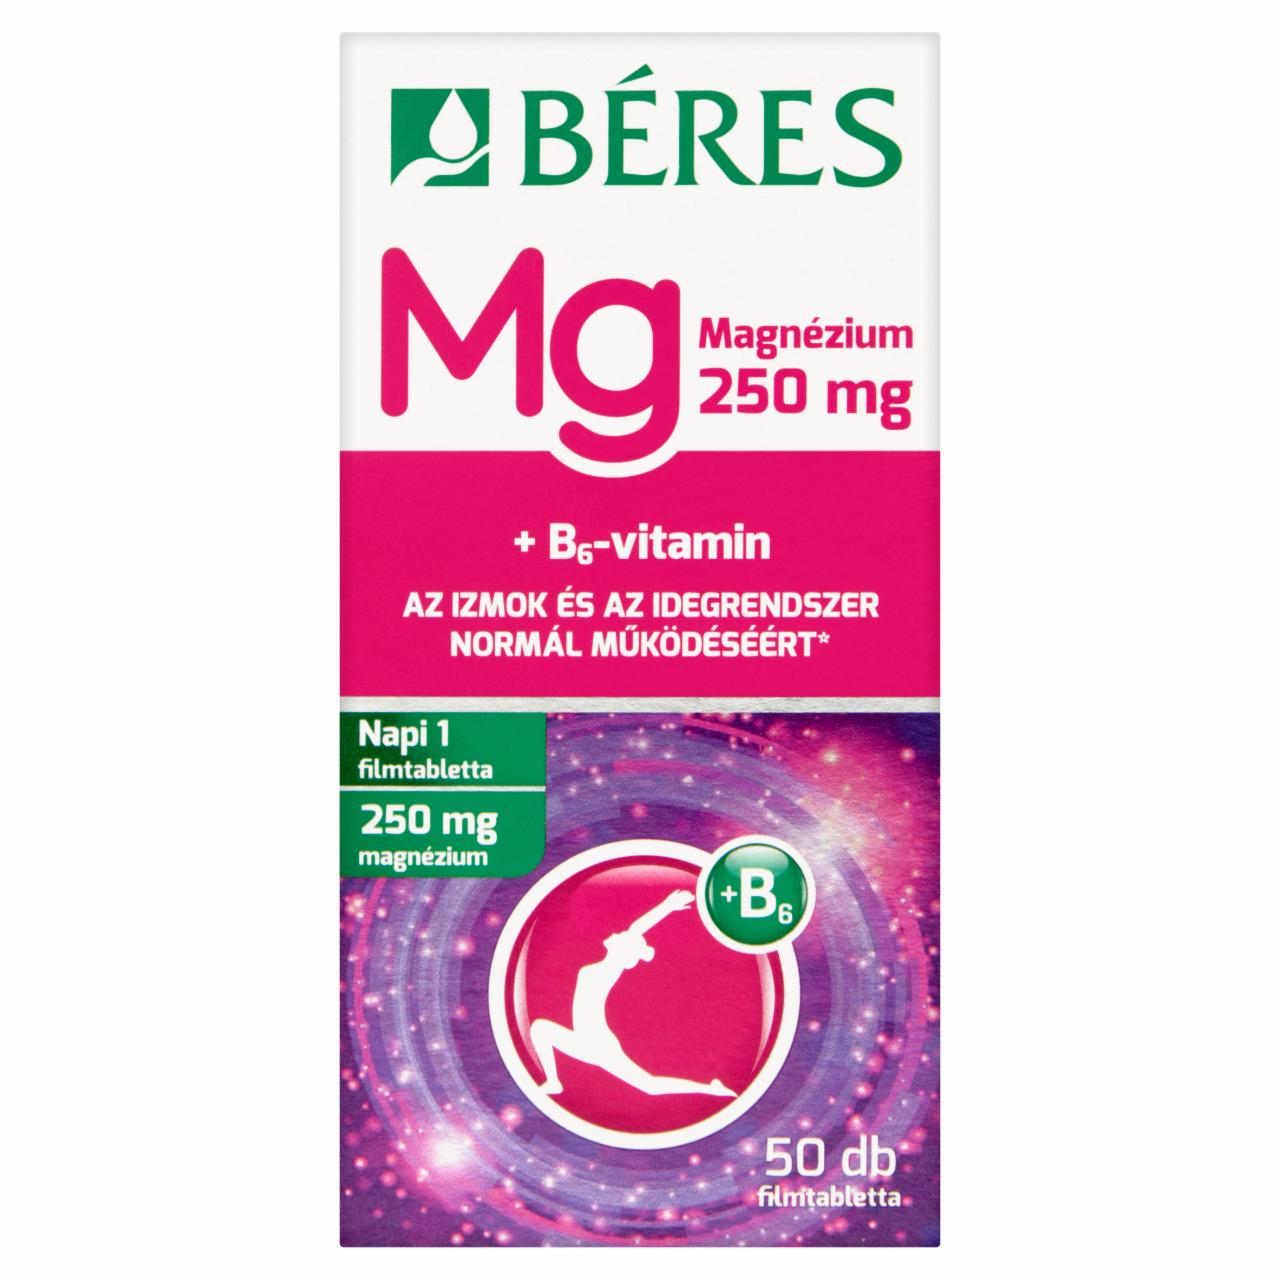 Képek - Béres Magnézium 250 mg filmtabletta 50 db 62,5 g